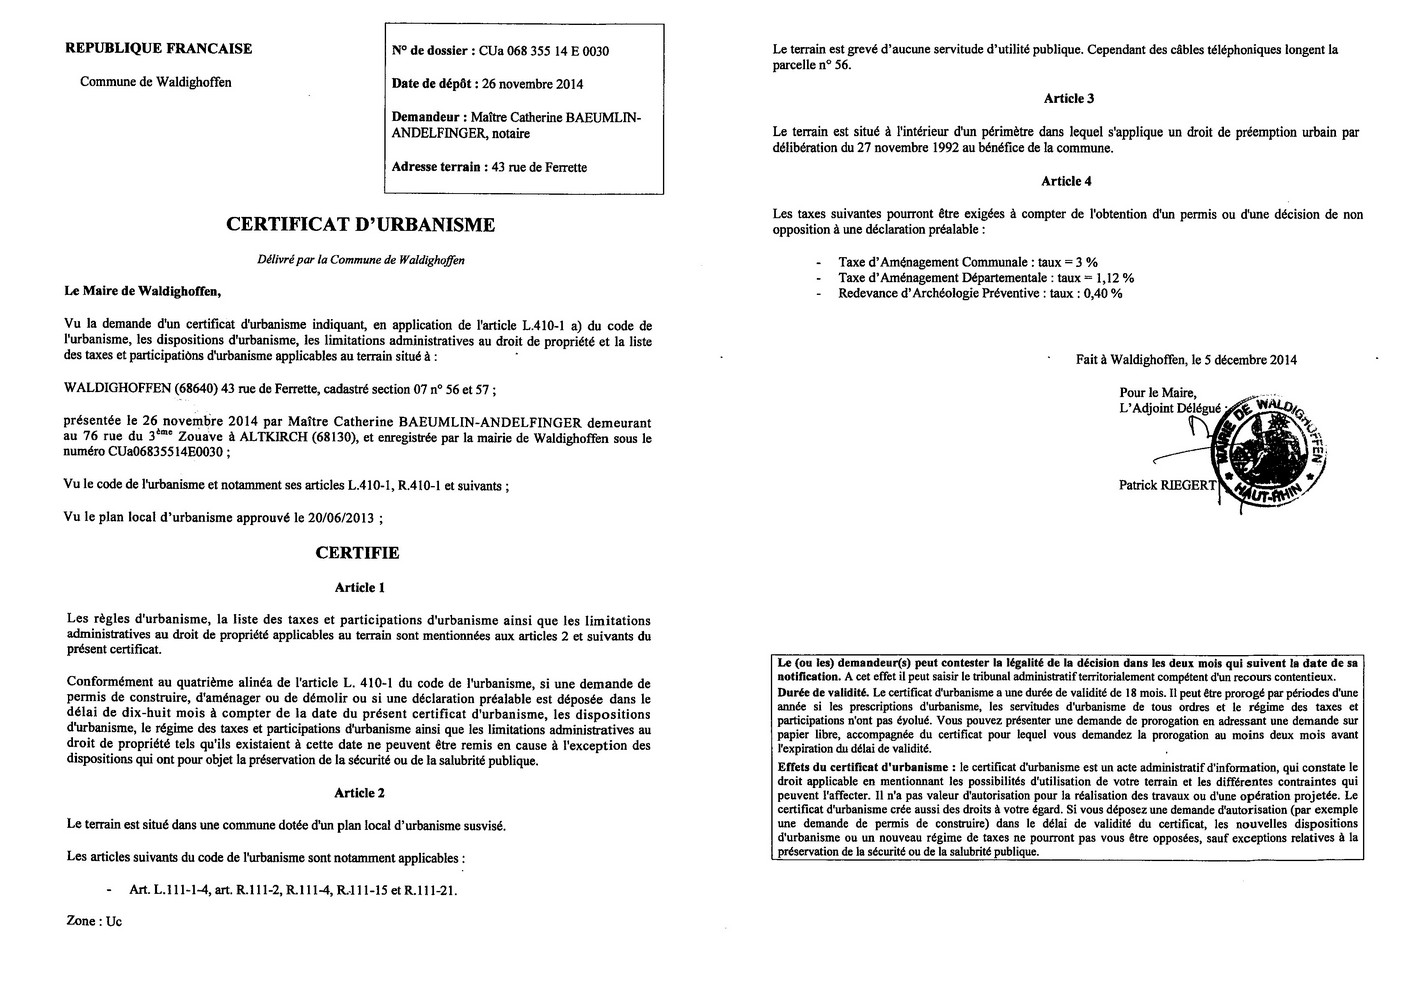 Certificat d'urbanisme délivré à Maître BAEUMLIN-ANDELFINGER, notaire